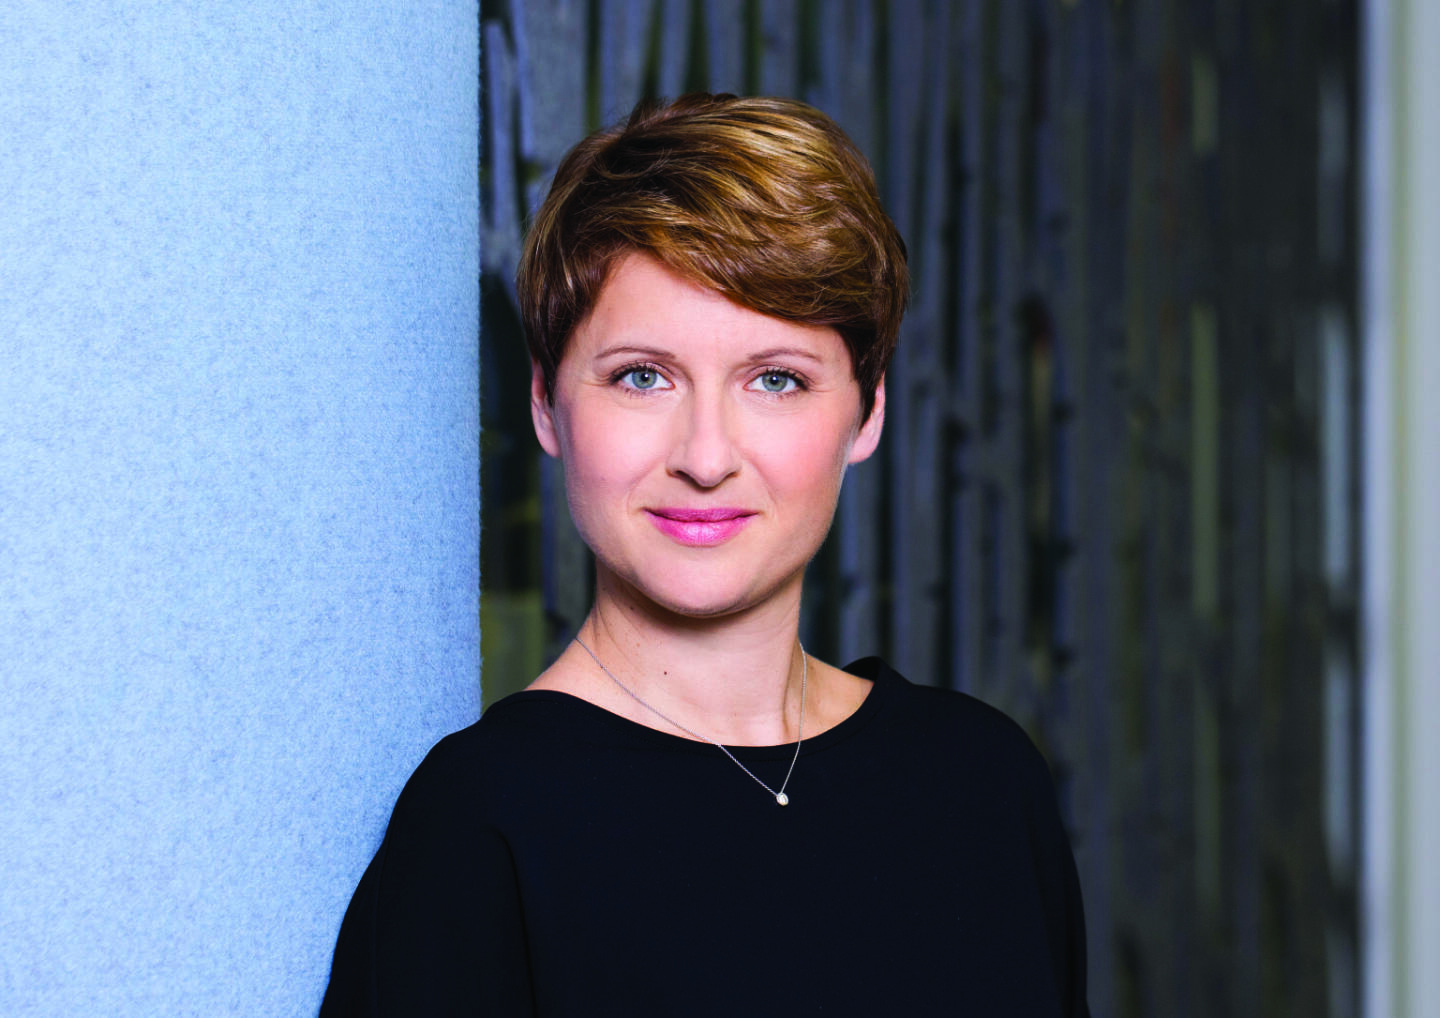 Gudrun Heidenreich-Pérez ist Director im Consulting bei Deloitte Österreich, Credit: Deloitte/feelimage